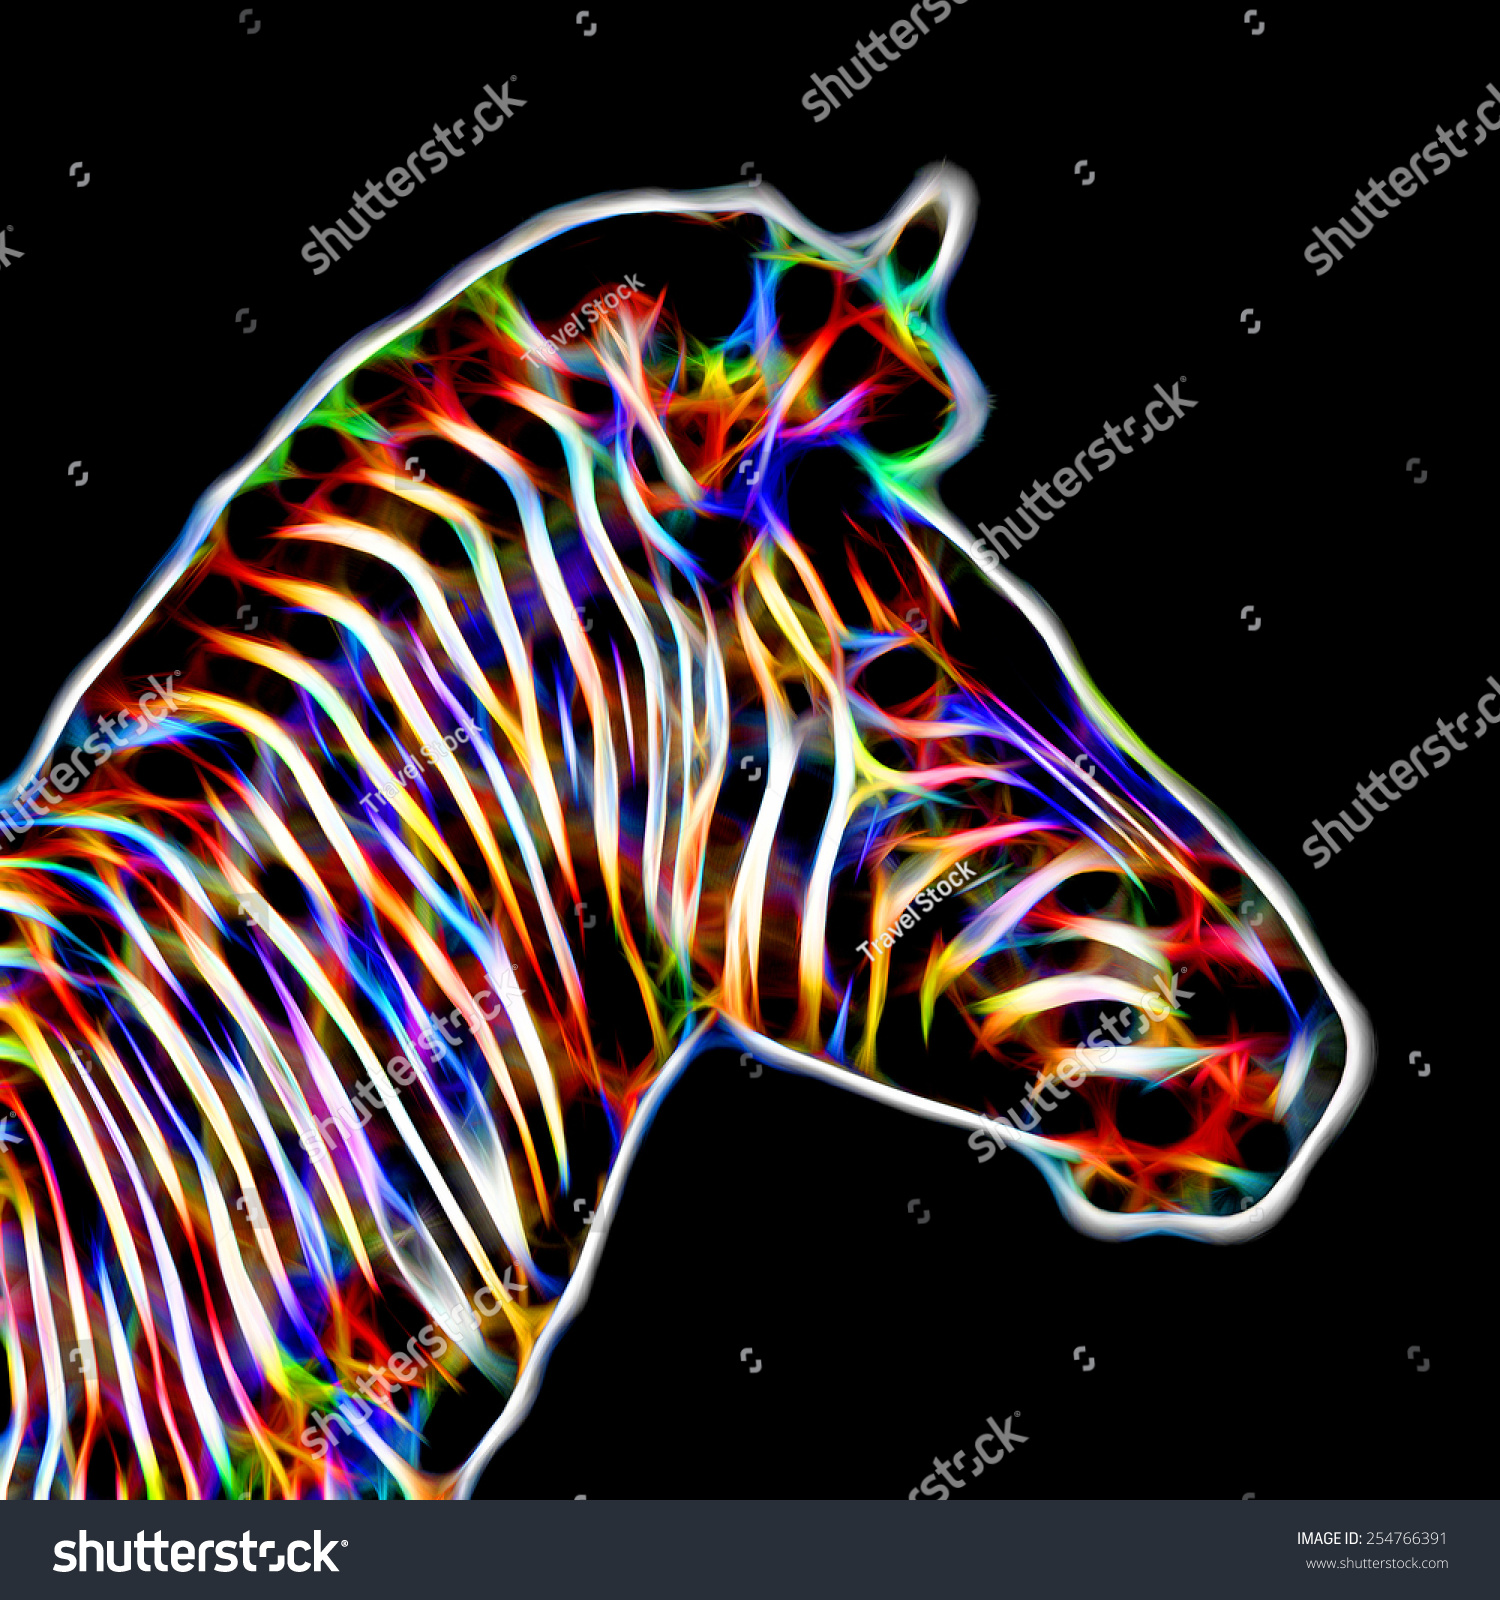 Fractal Illustration Zebra Stock Illustration 254766391 - Shutterstock